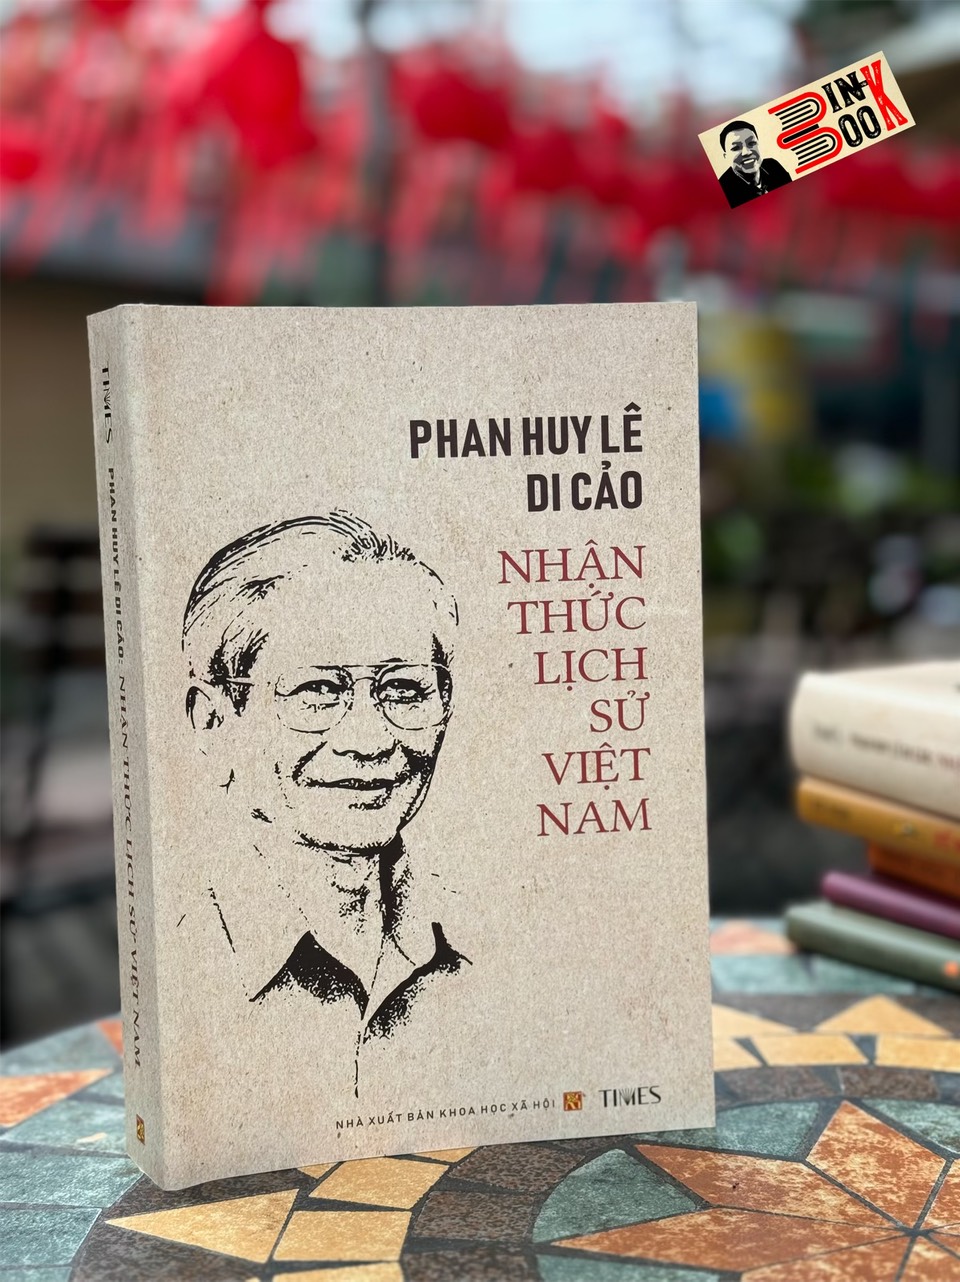 PHAN HUY LÊ DI CẢO - NHẬN THỨC LỊCH SỬ VIỆT NAM - Phan Huy Lê - Times Book - NXB Khoa Học Xã Hội.